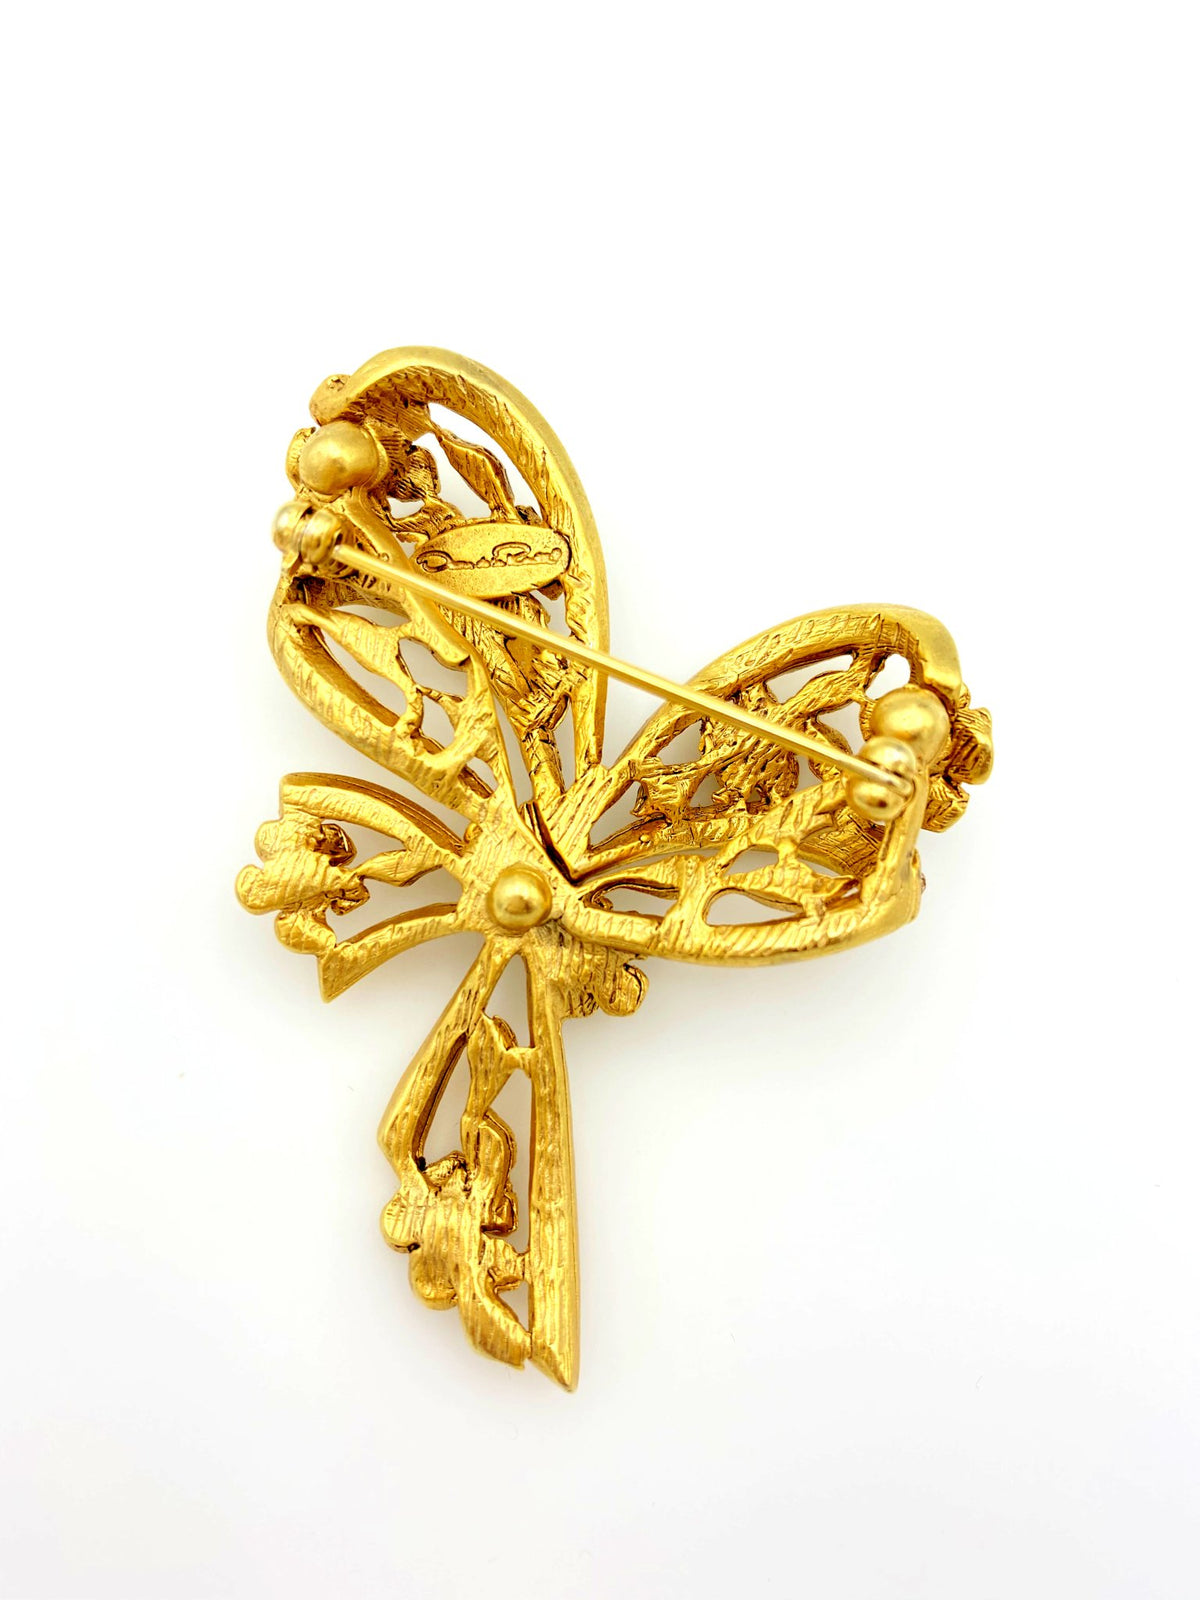 Gold Oscar De La Renta Feminine Bow & Flowers Brooch - 24 Wishes Vintage Jewelry